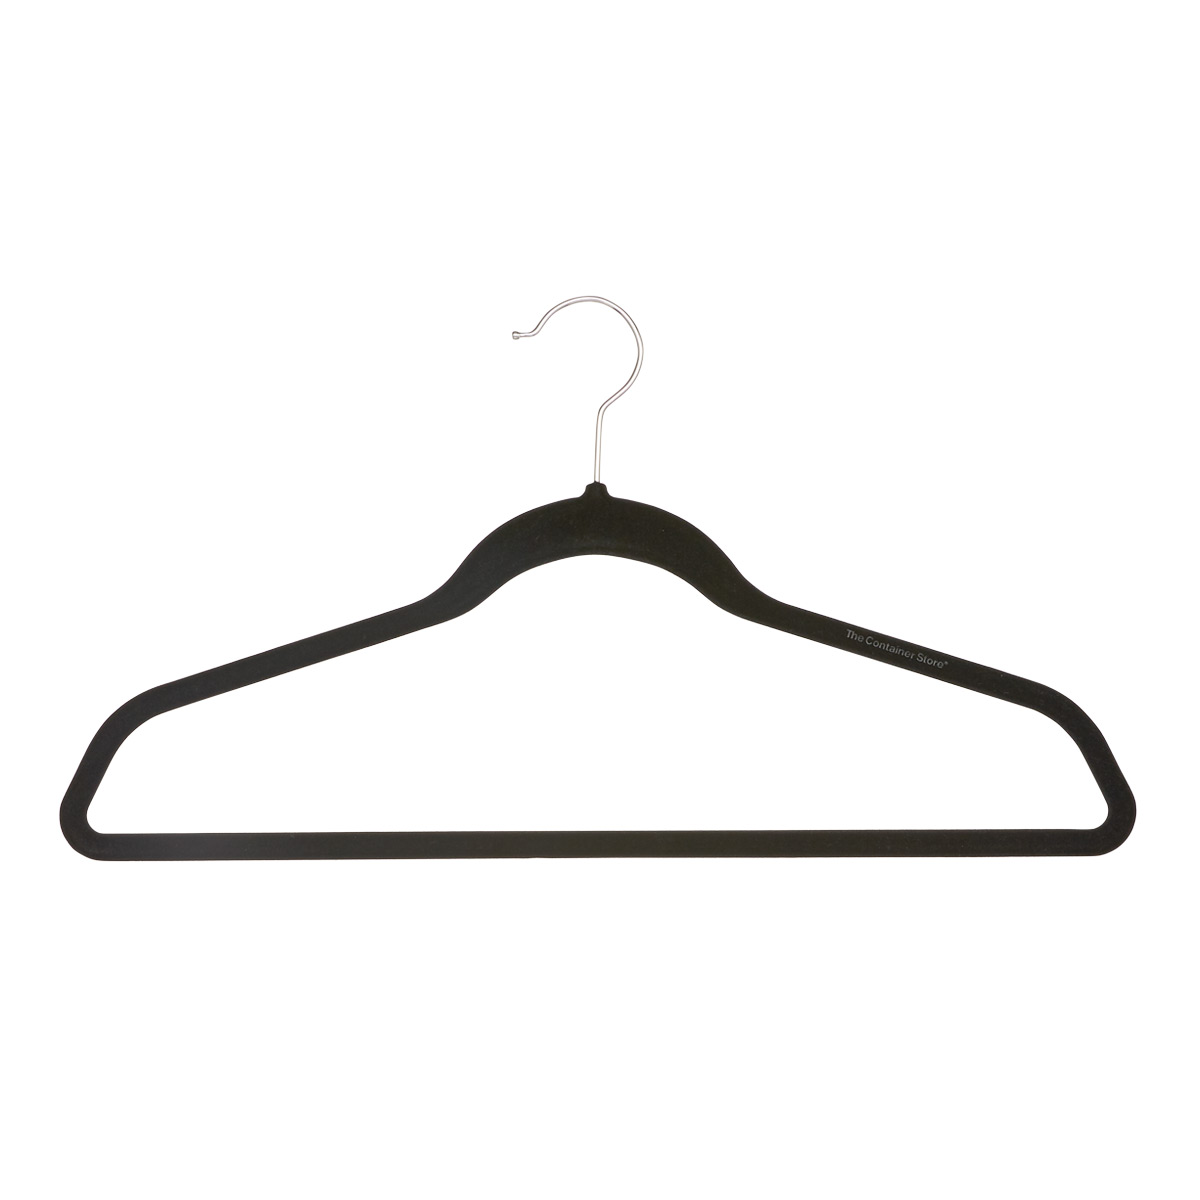 40 Count Huggable Hangers Felt Black Velvet Hangers Space Saving Coat Hanger Non Slip Joy Mangano